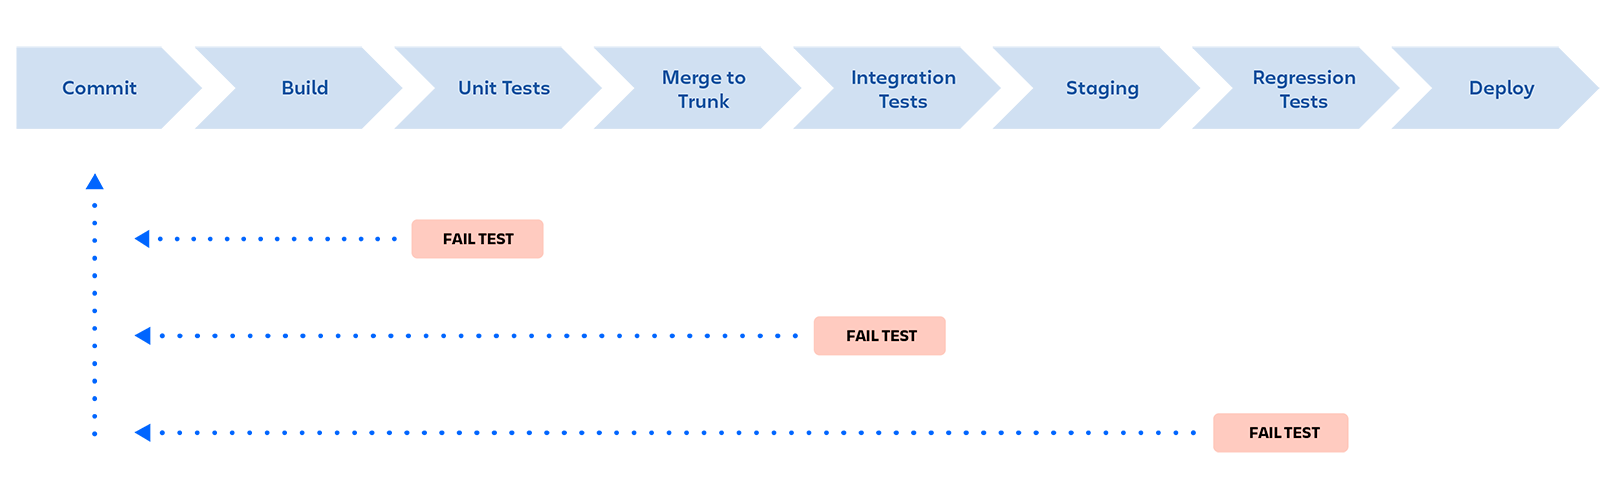 Pipeline DevOps : commit, build, tests unitaires, merge vers la branche « trunk », tests d'intégration, staging, tests de régression, déploiement. Le pipeline est arrêté si un test échoue à n'importe quel stade, et le développeur reçoit un feedback.